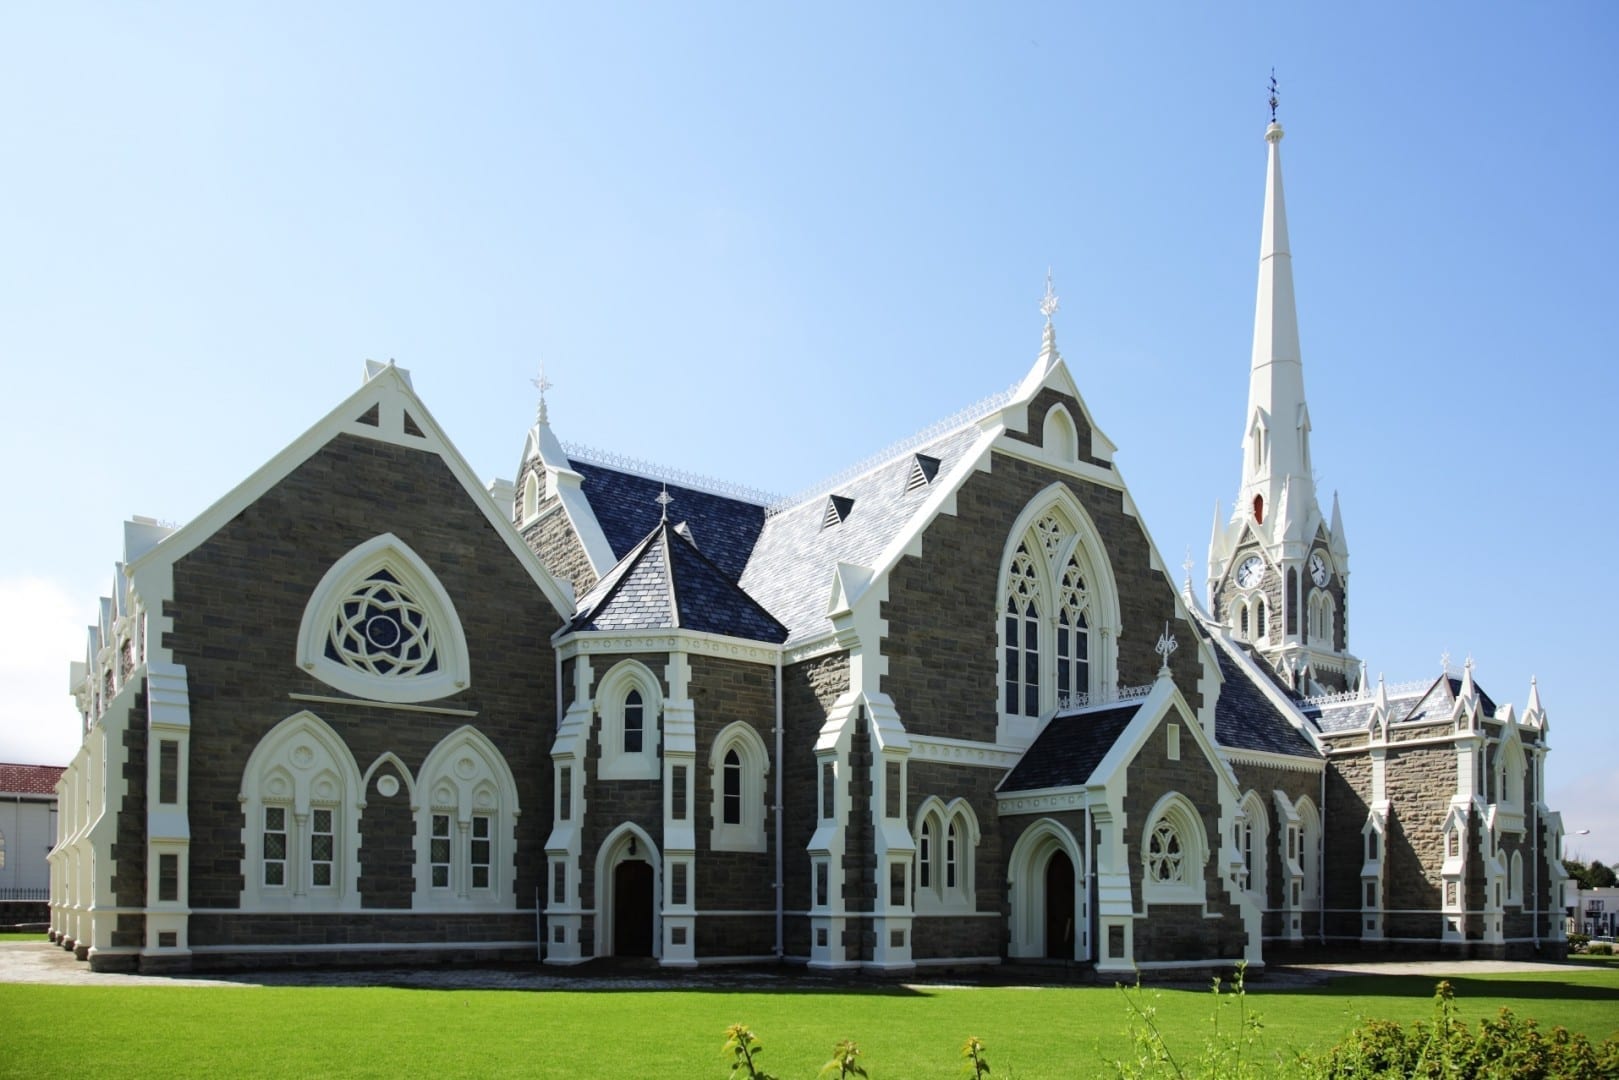 La iglesia reformada holandesa domina el horizonte de Graaff-Reinet Graaff-Reinet República de Sudáfrica